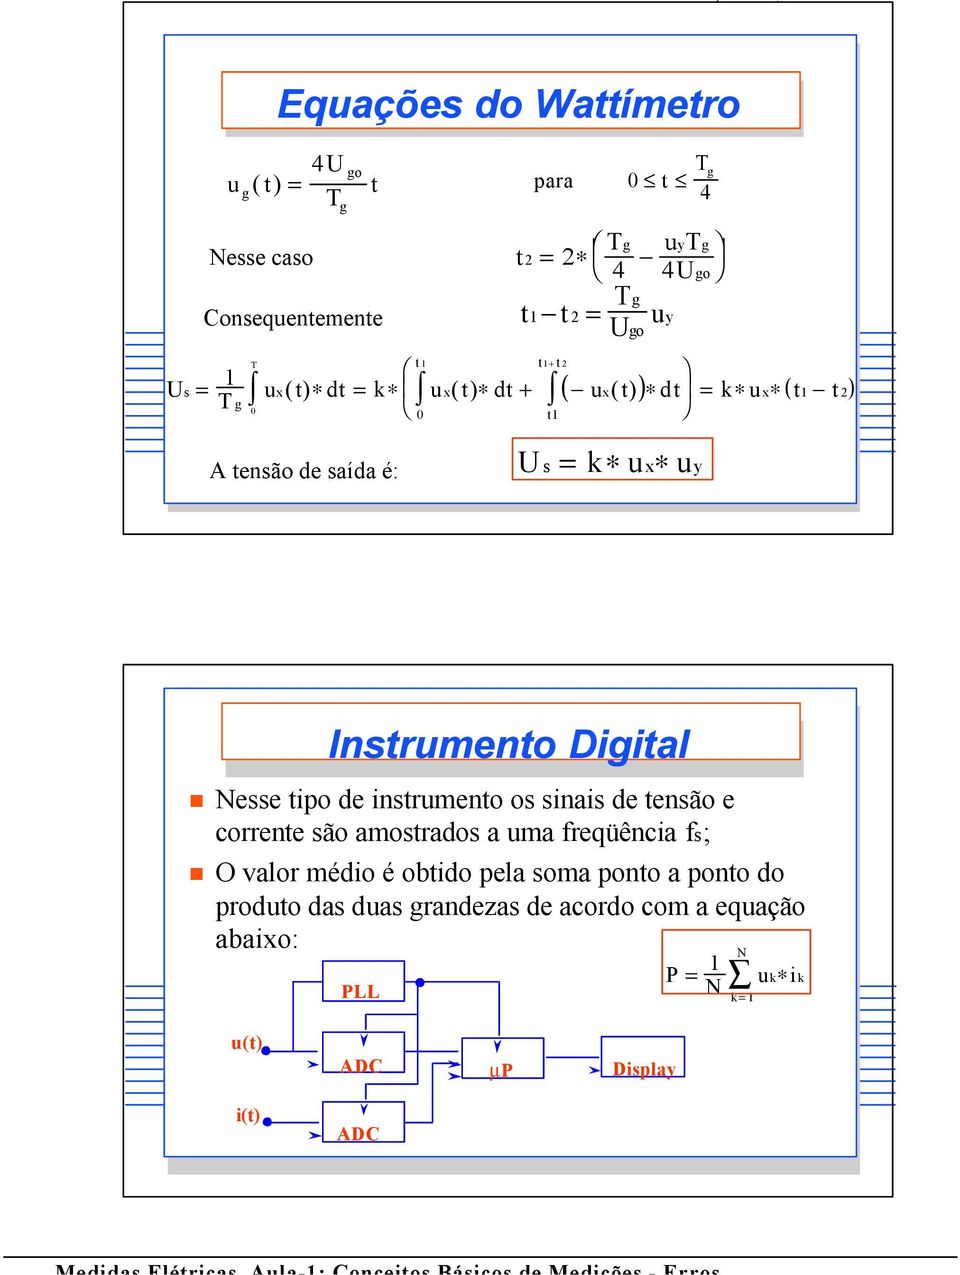 Digital Nesse tipo de instrumento os sinais de tensão e corrente são amostrados a uma freqüência fs; O valor médio é obtido pela